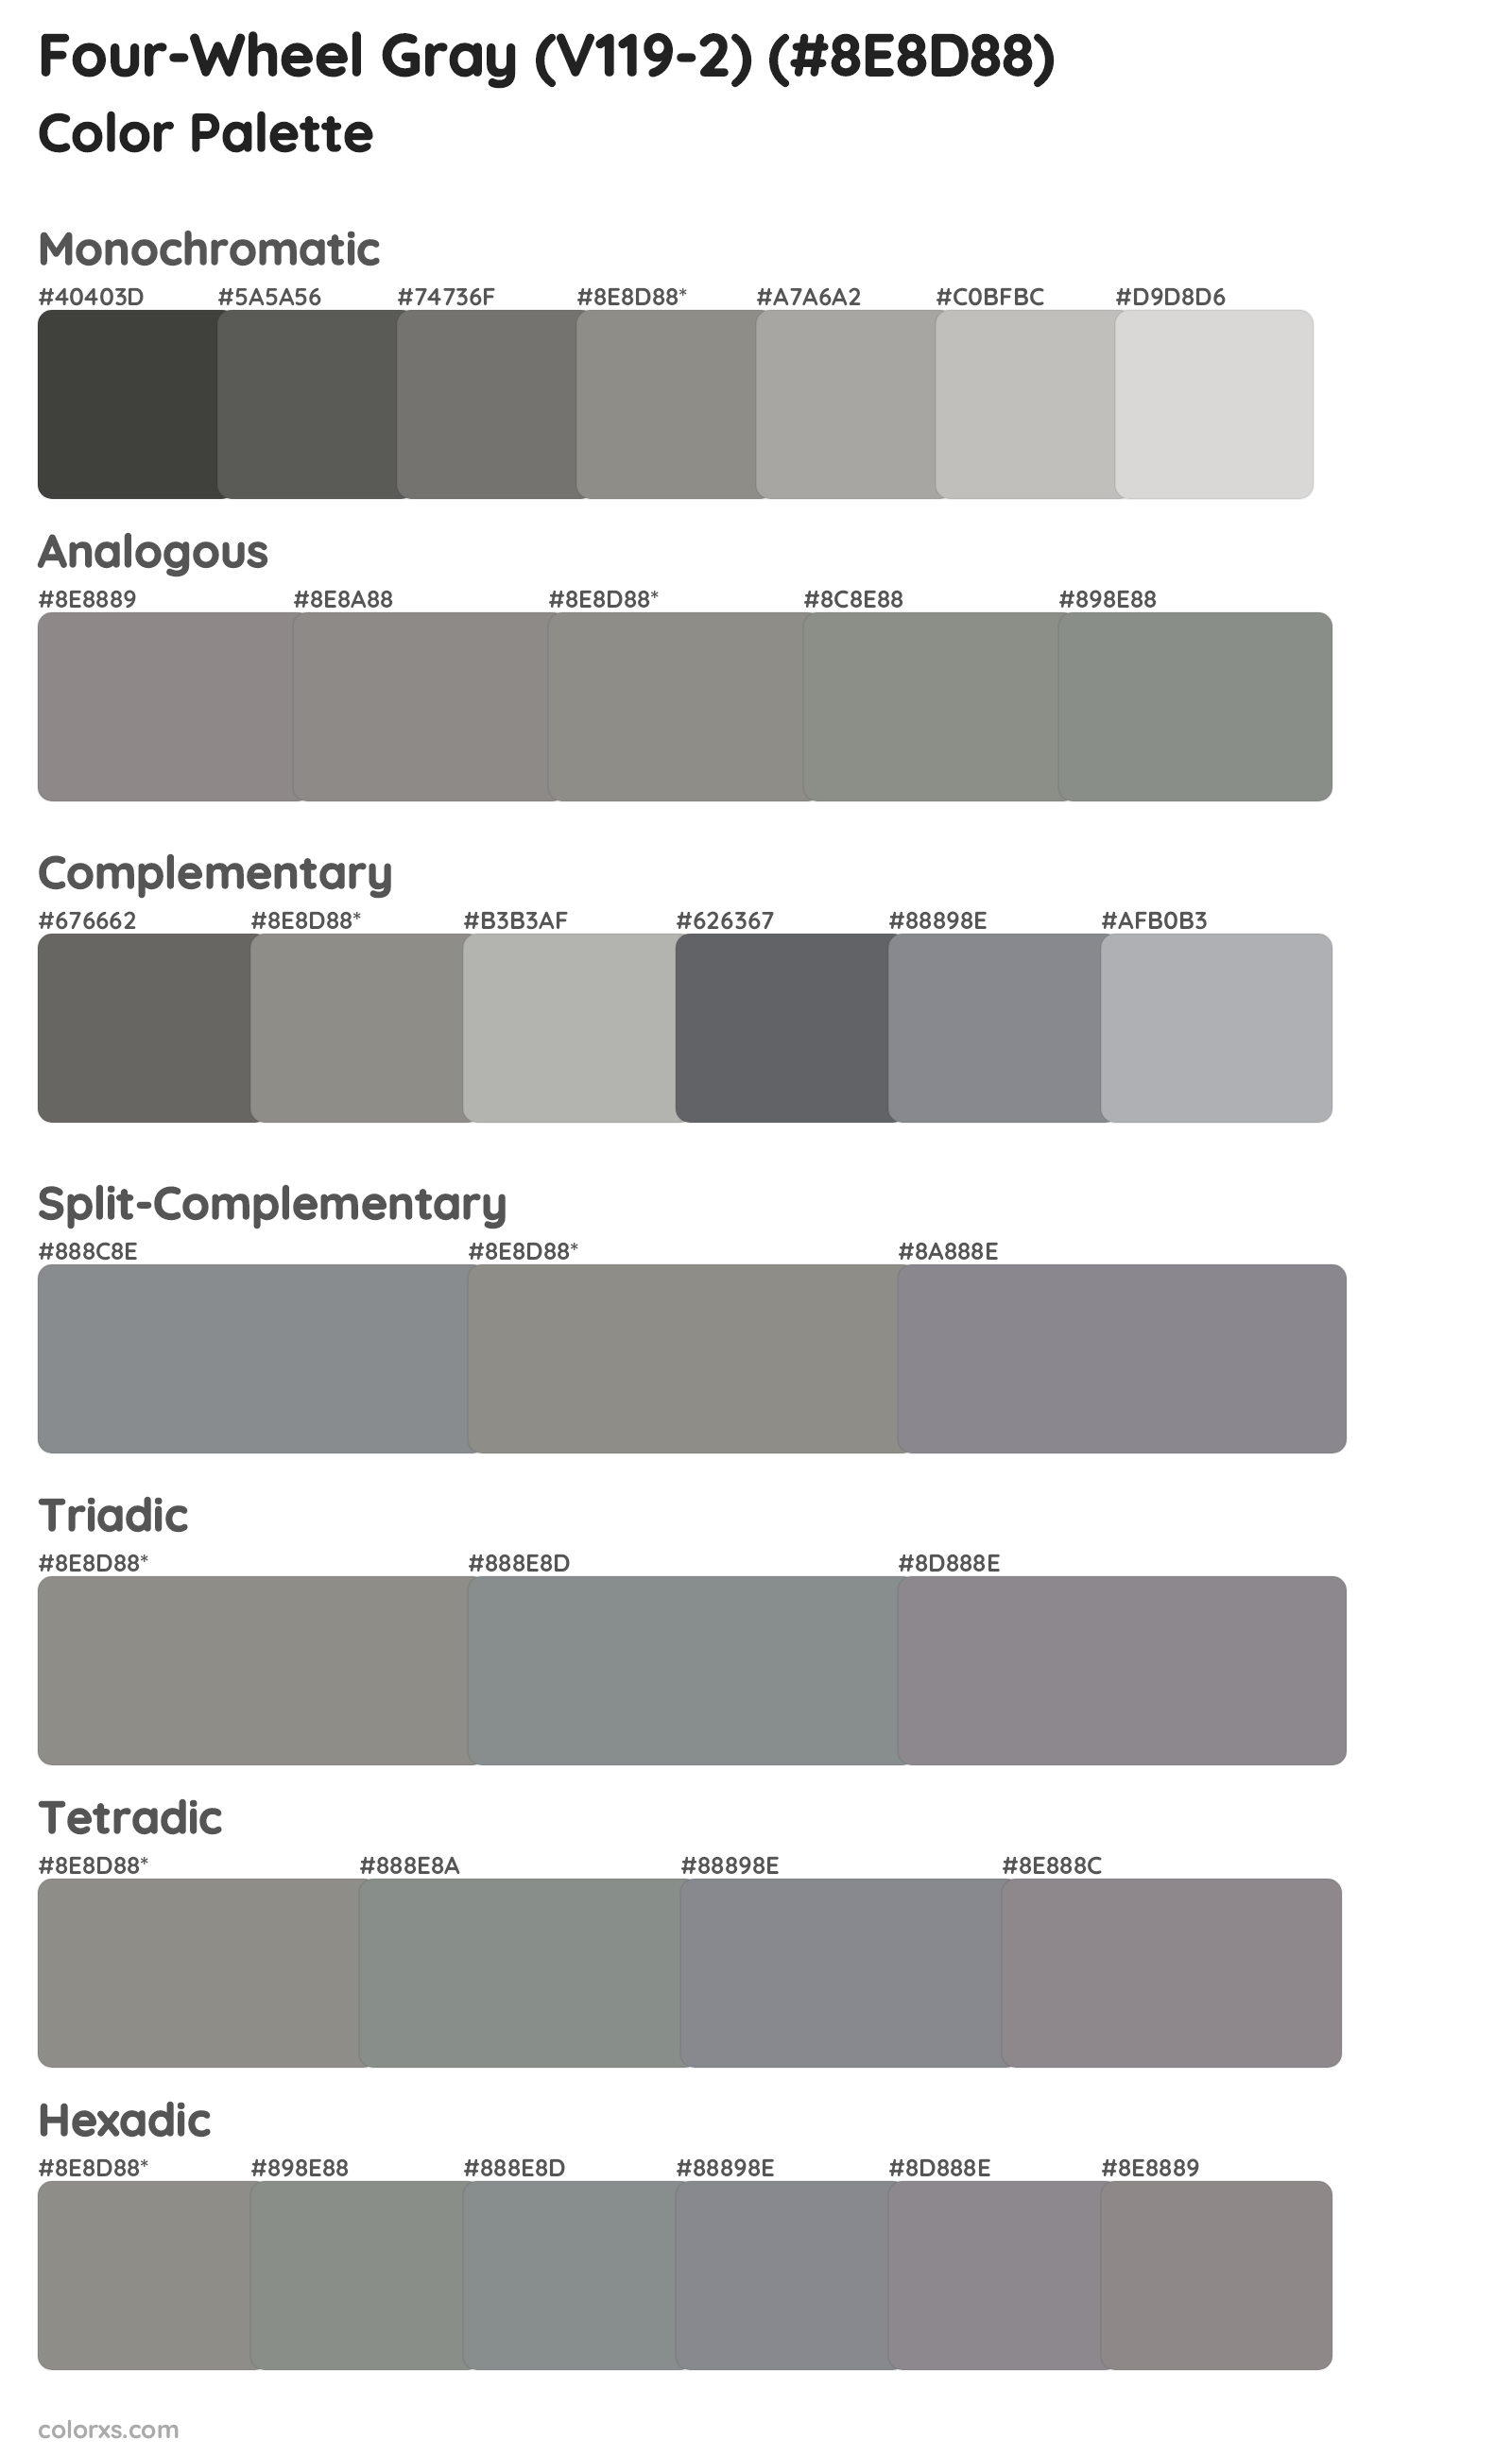 Four-Wheel Gray (V119-2) Color Scheme Palettes